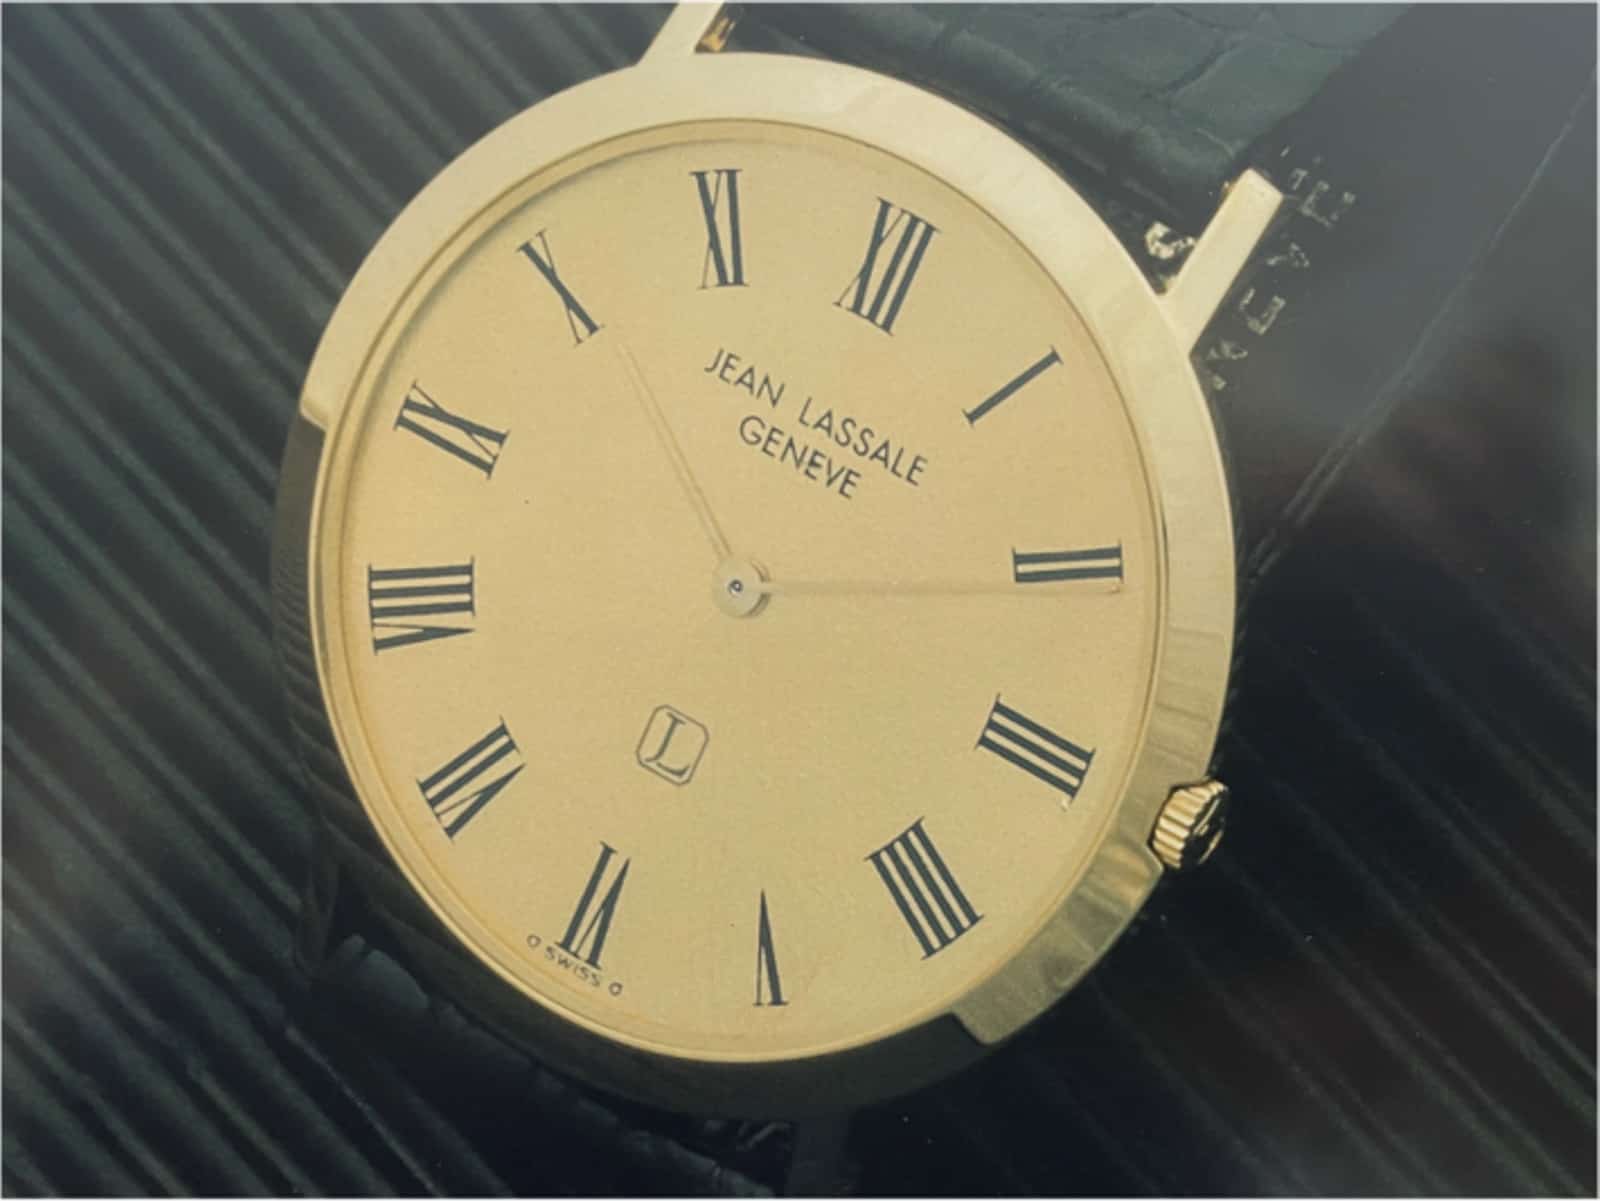 Jean Lassale Uhr Kaliber 1200 mit Handaufzug von 1978